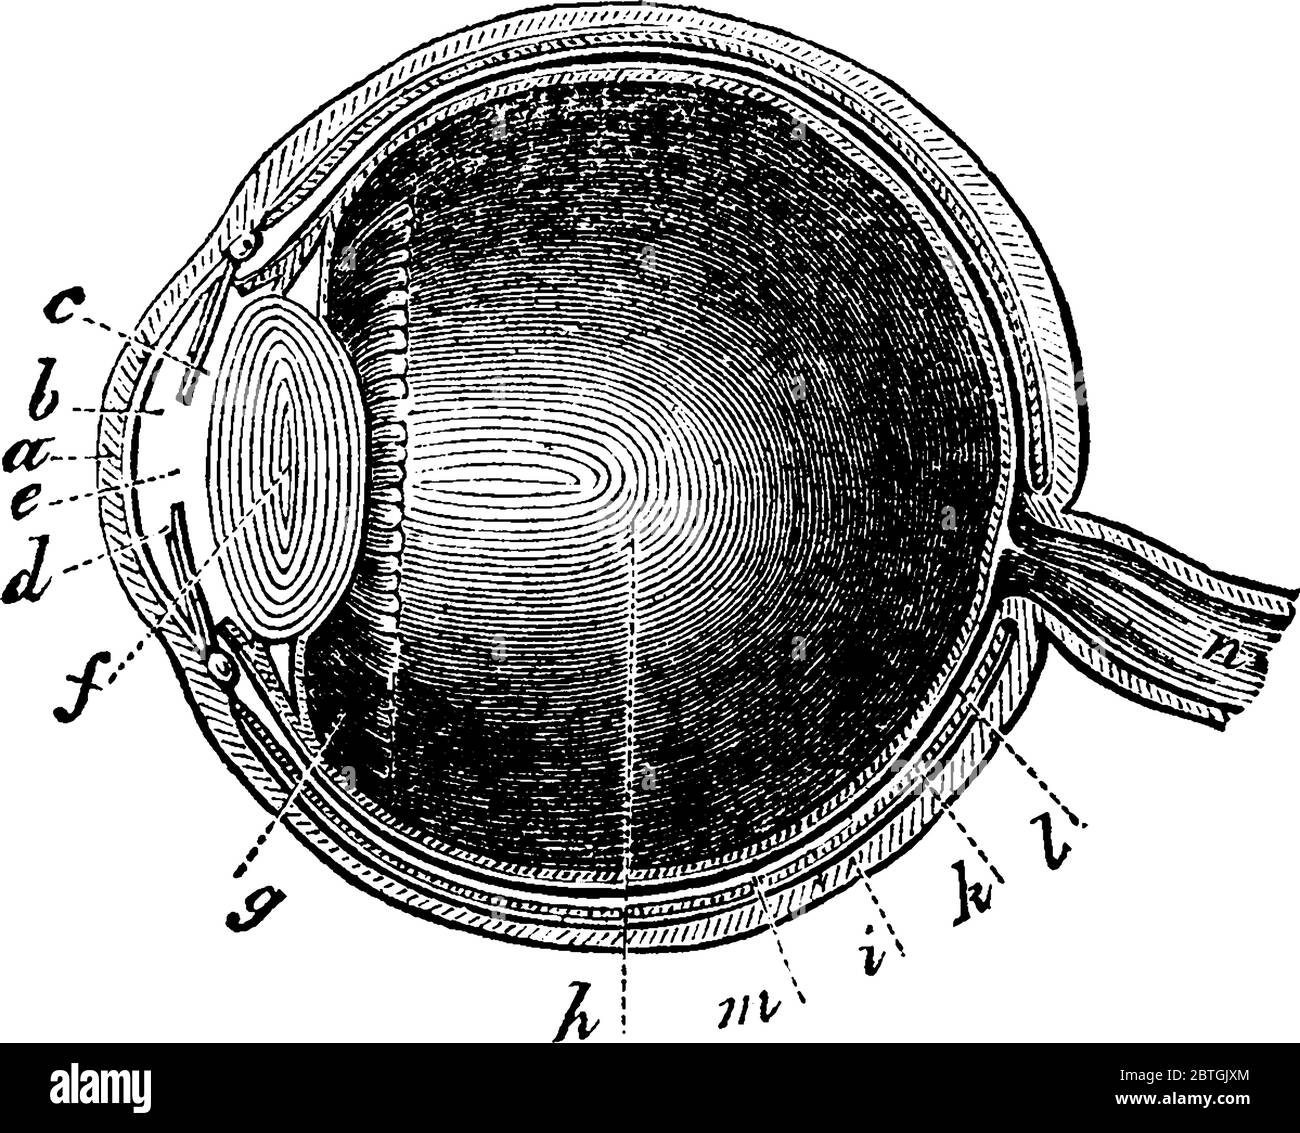 Una rappresentazione tipica dell'occhio umano con le parti, pupilla, retina che è un'espansione del nervo ottico, del rivestimento coroide e dei legamenti ciliari, Illustrazione Vettoriale